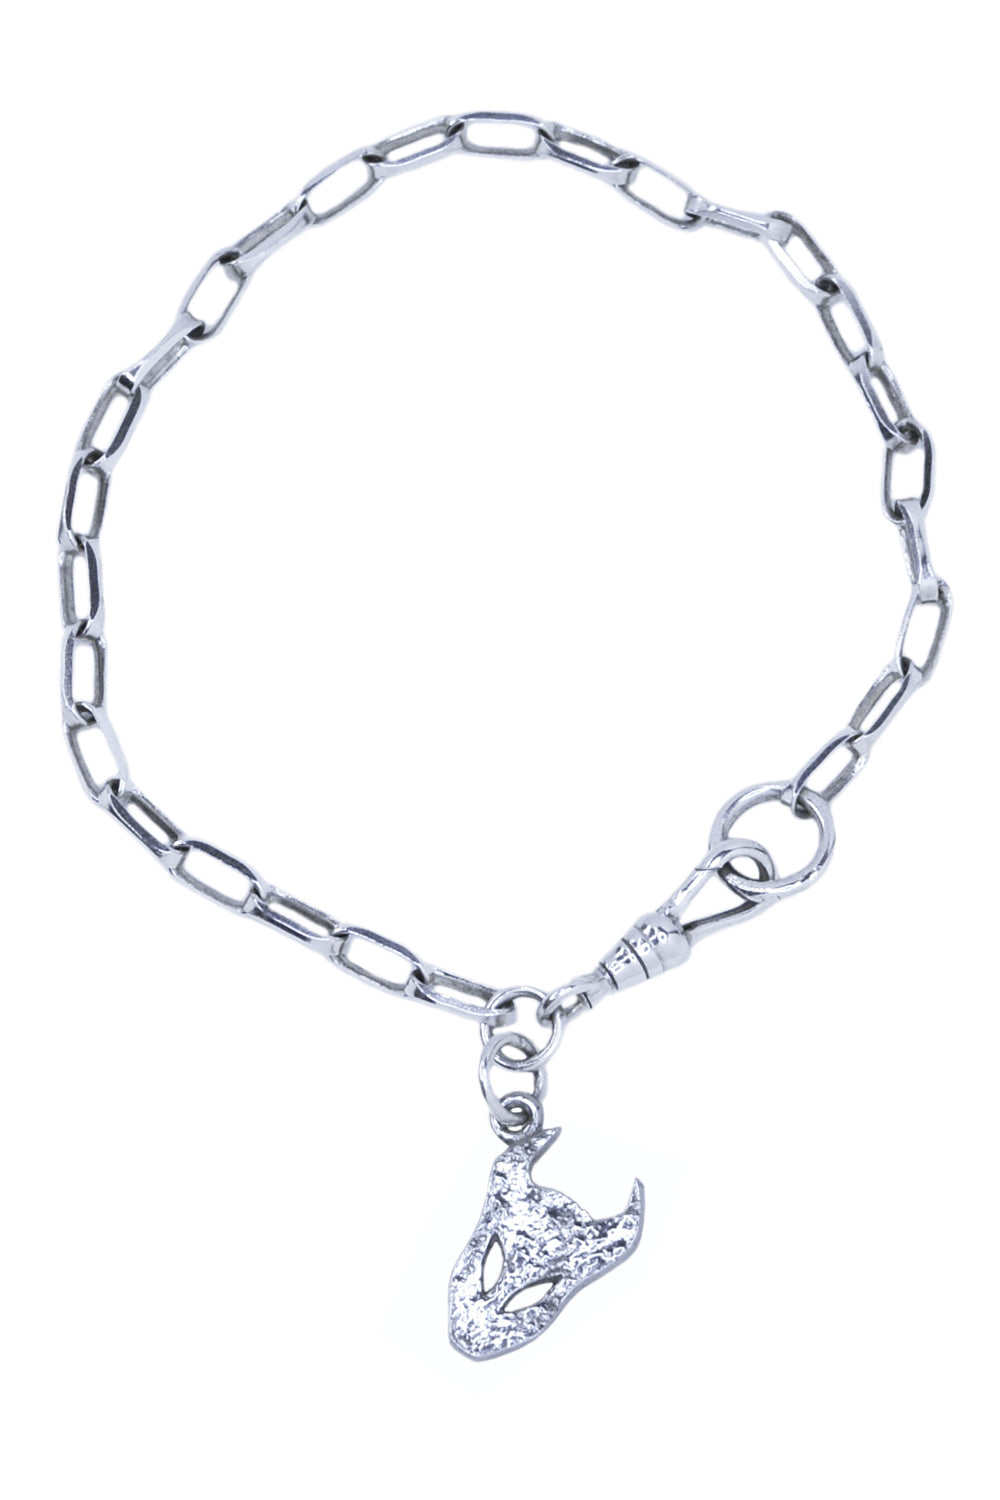 demon link chain bracelet in silver by Annika Burman